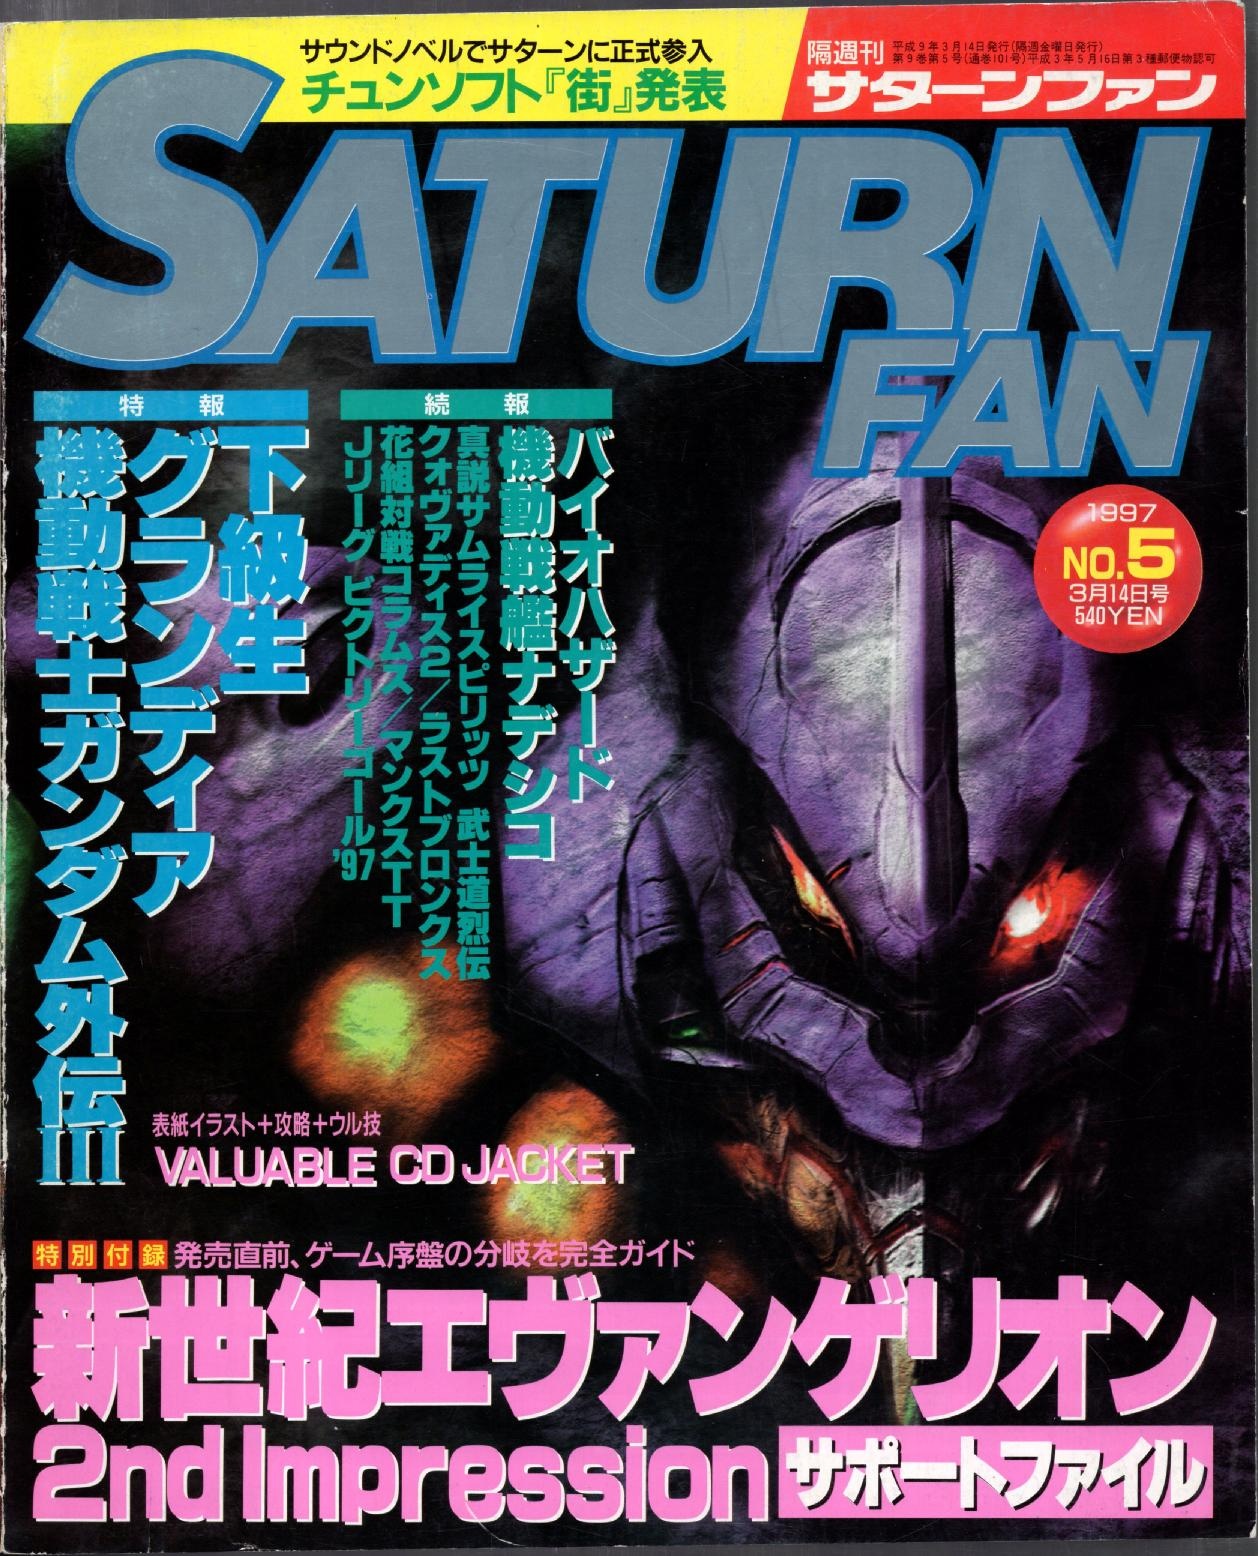 SaturnFan JP 1997-05 19970314.pdf